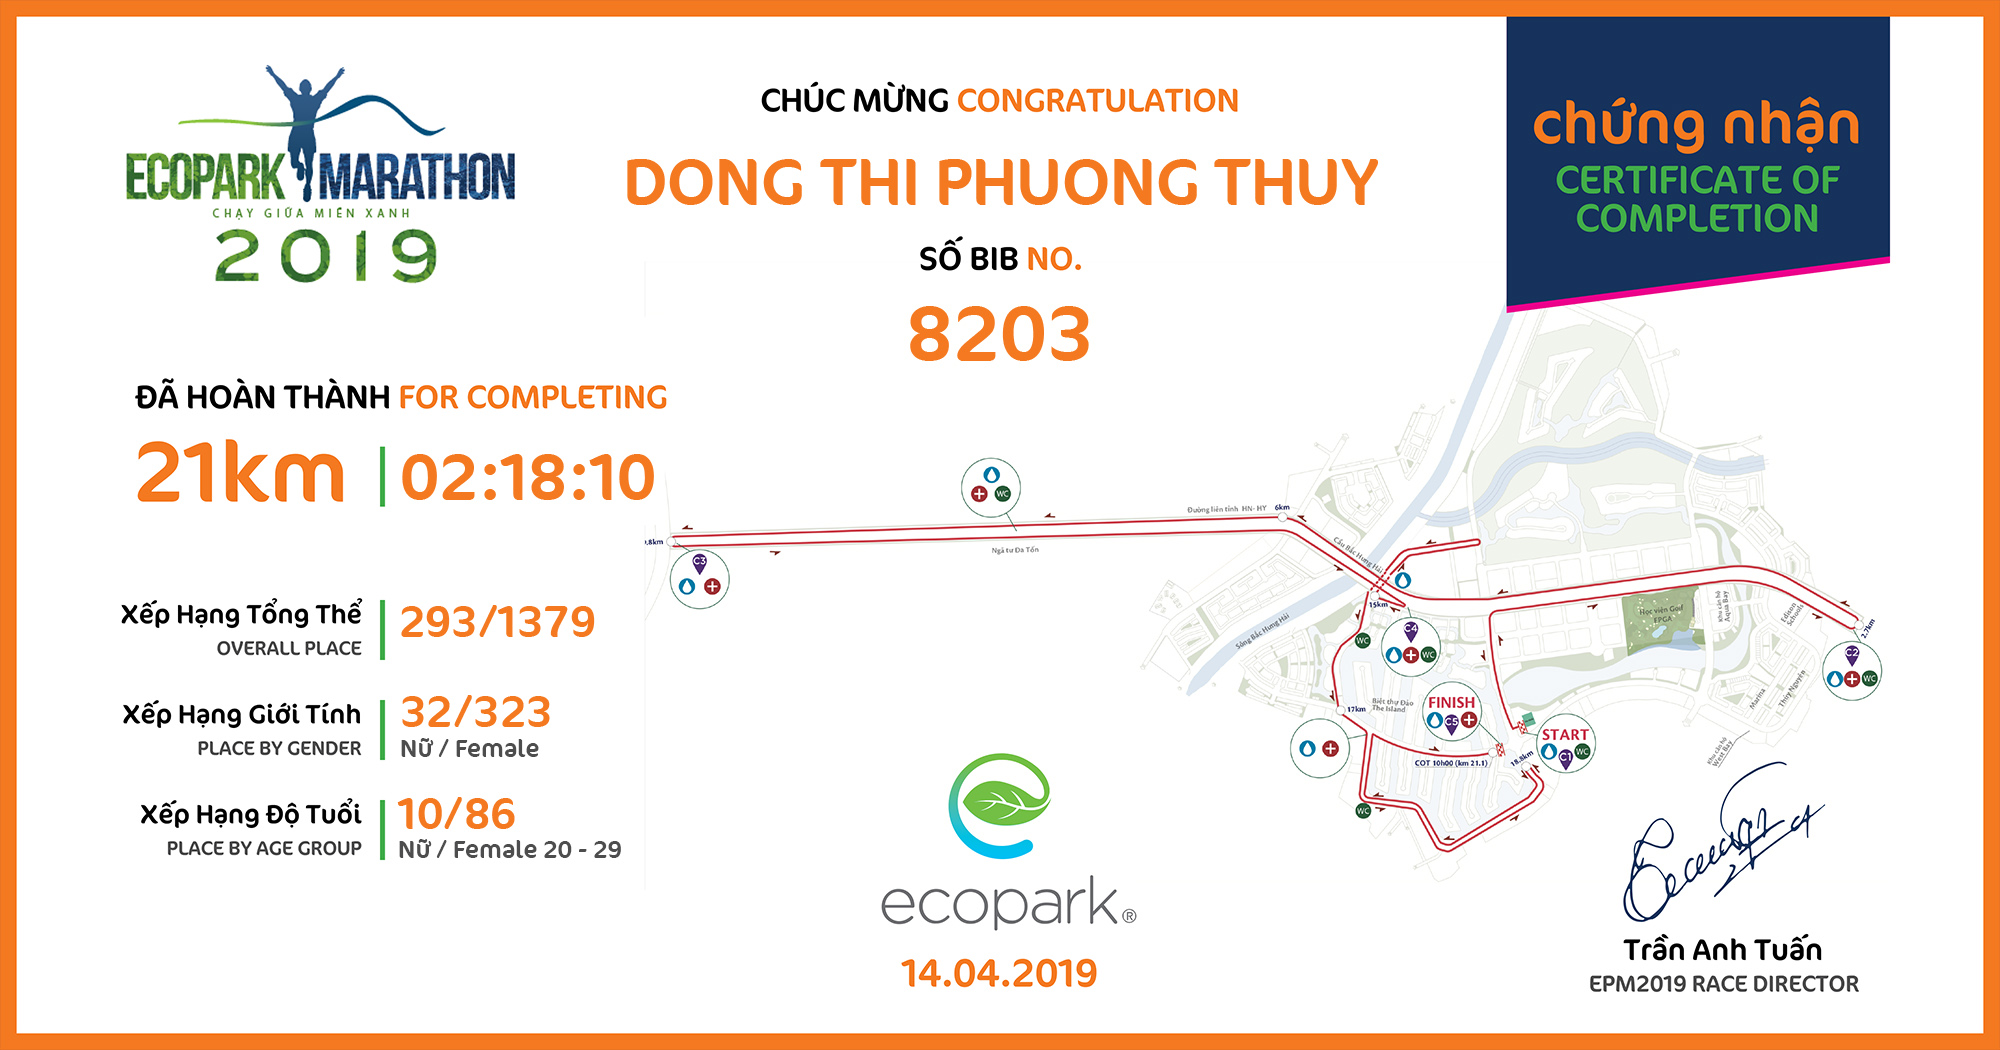 8203 - Dong Thi Phuong Thuy